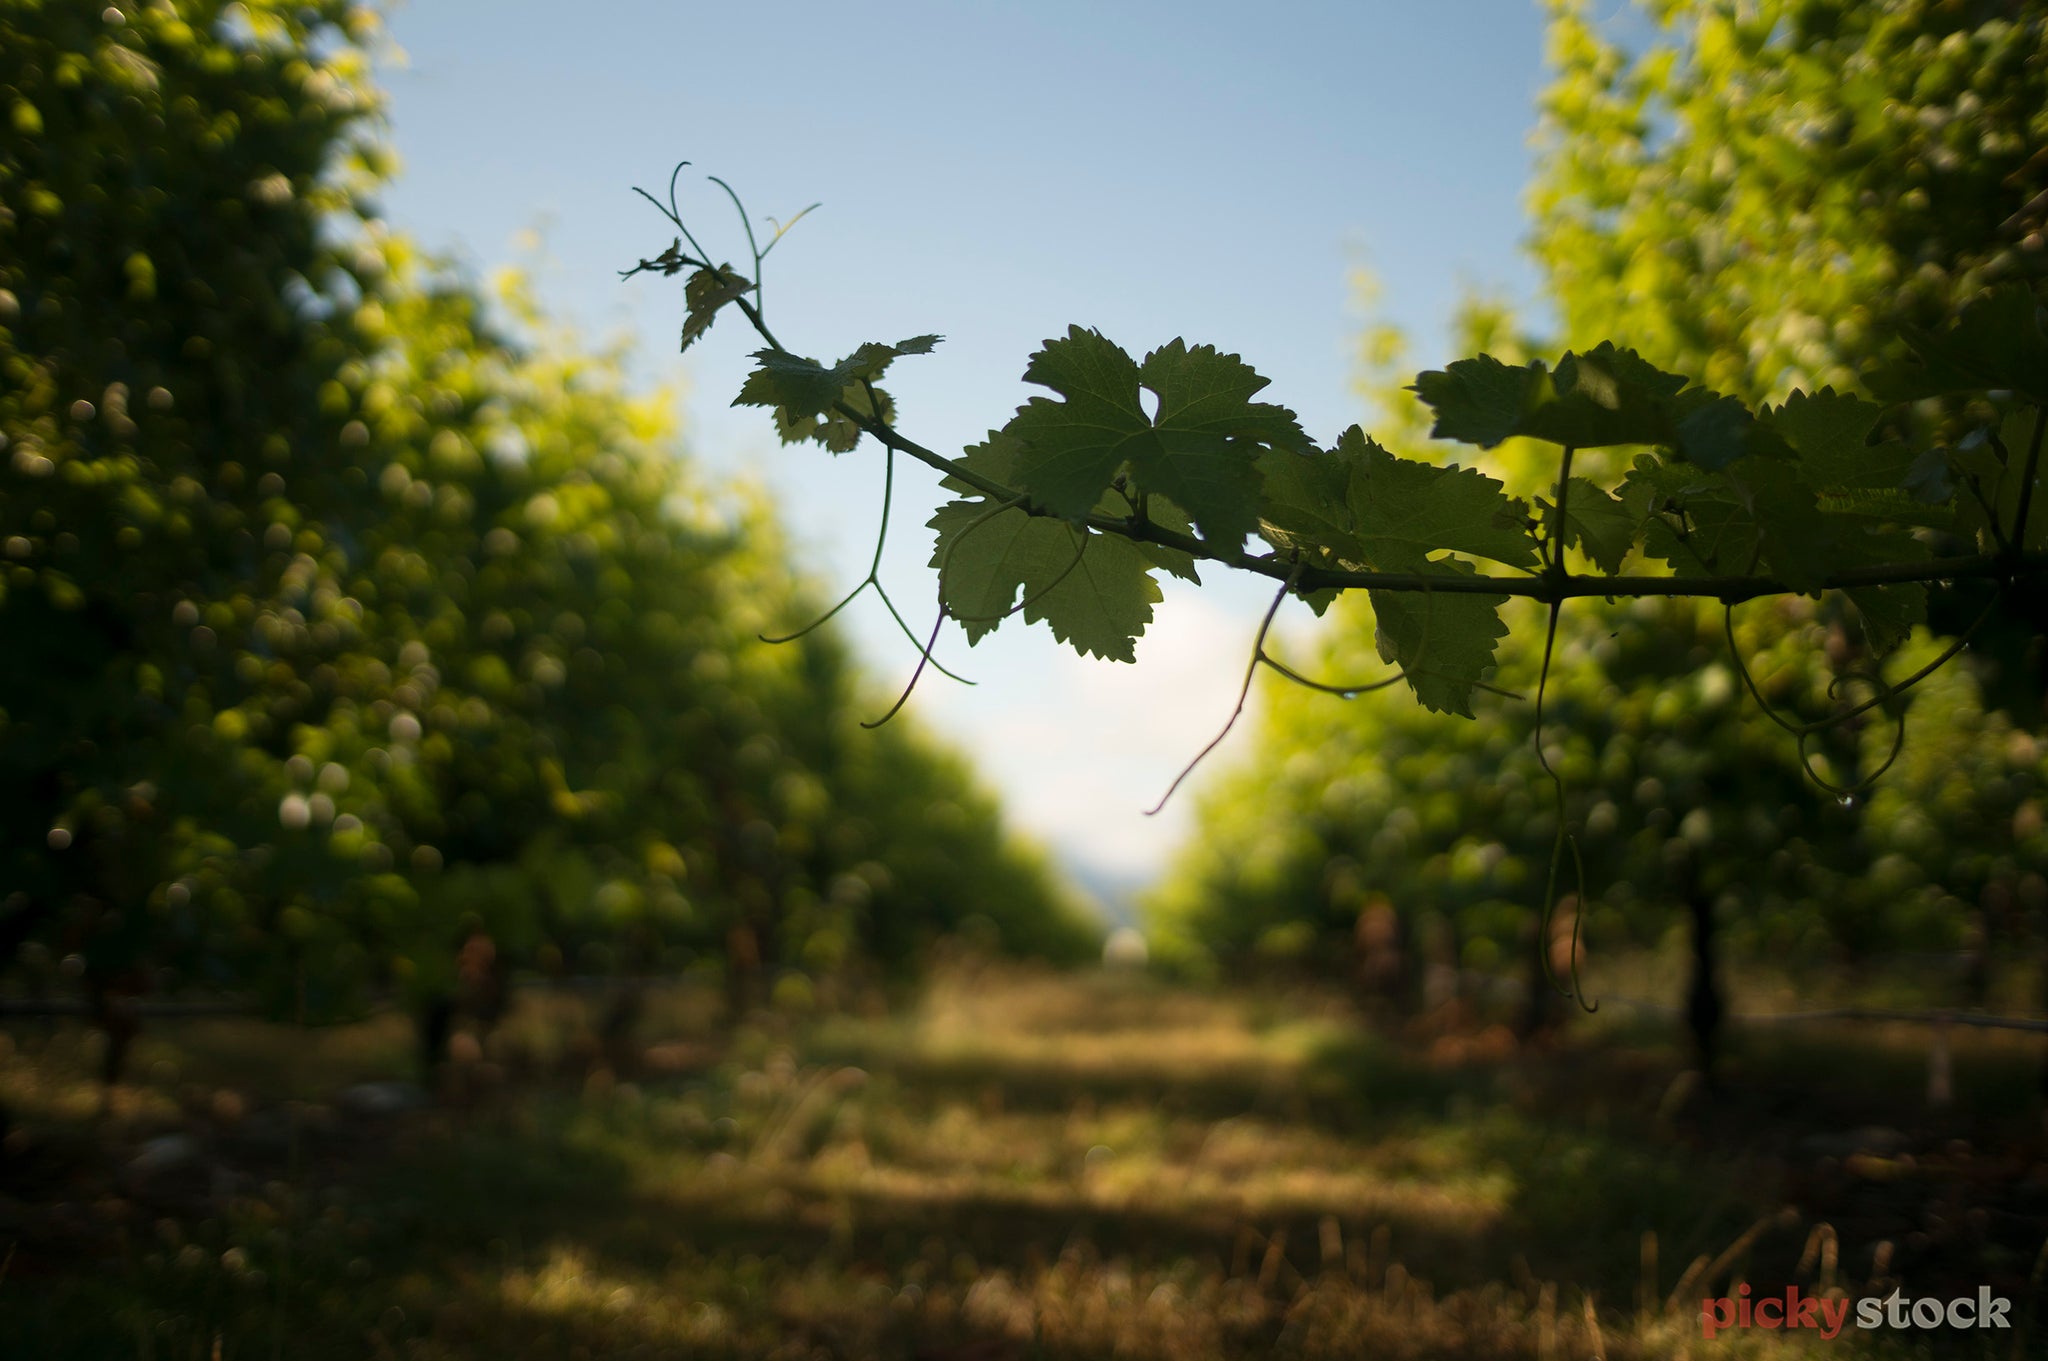 Close up of a grapevine in a vineyard, Marlborough wine region.
